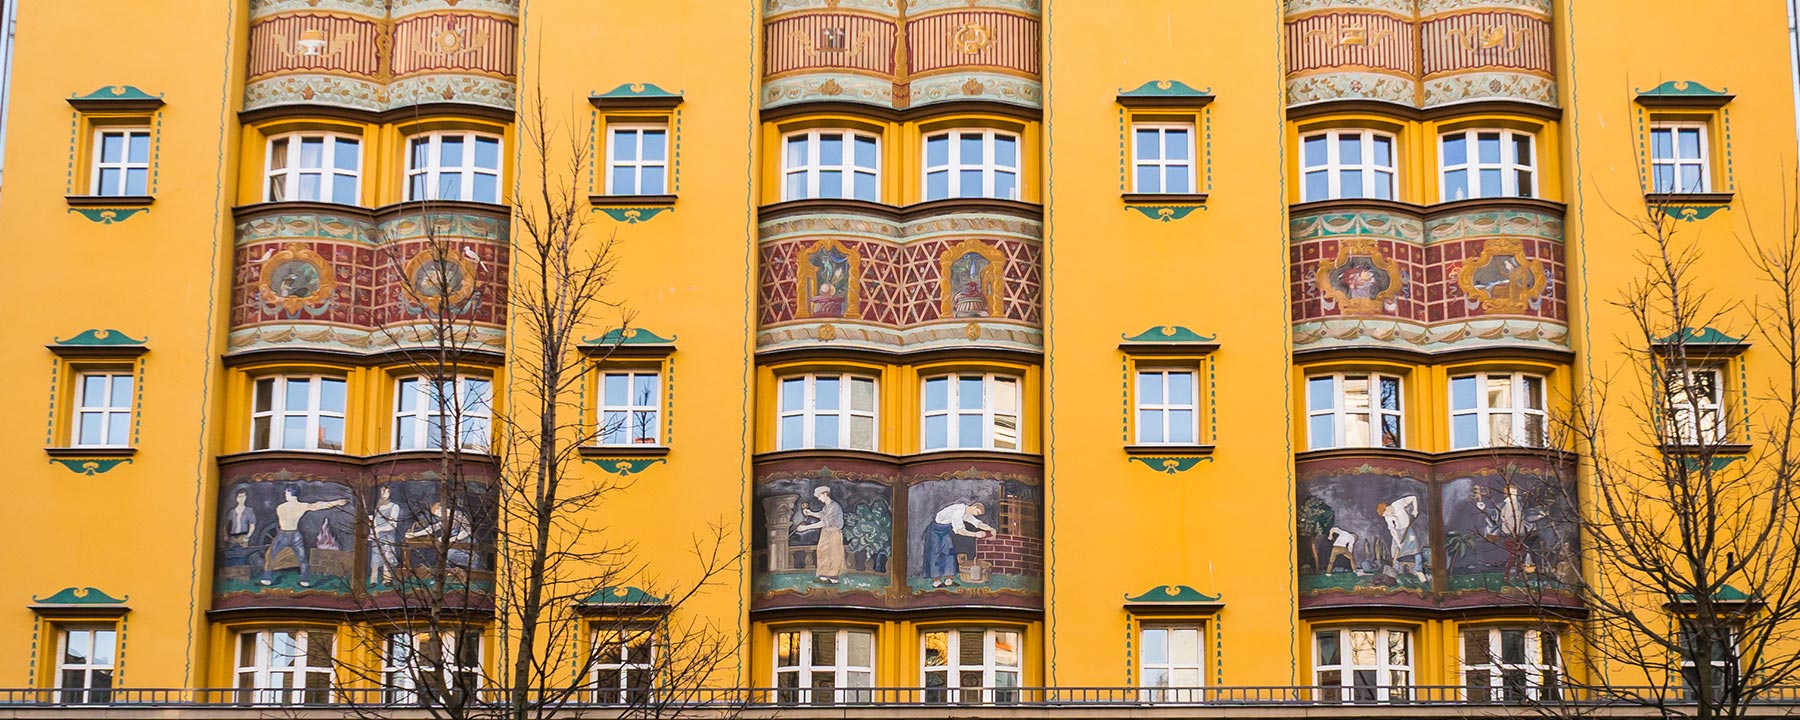 fassade art nouveaustyle berlin